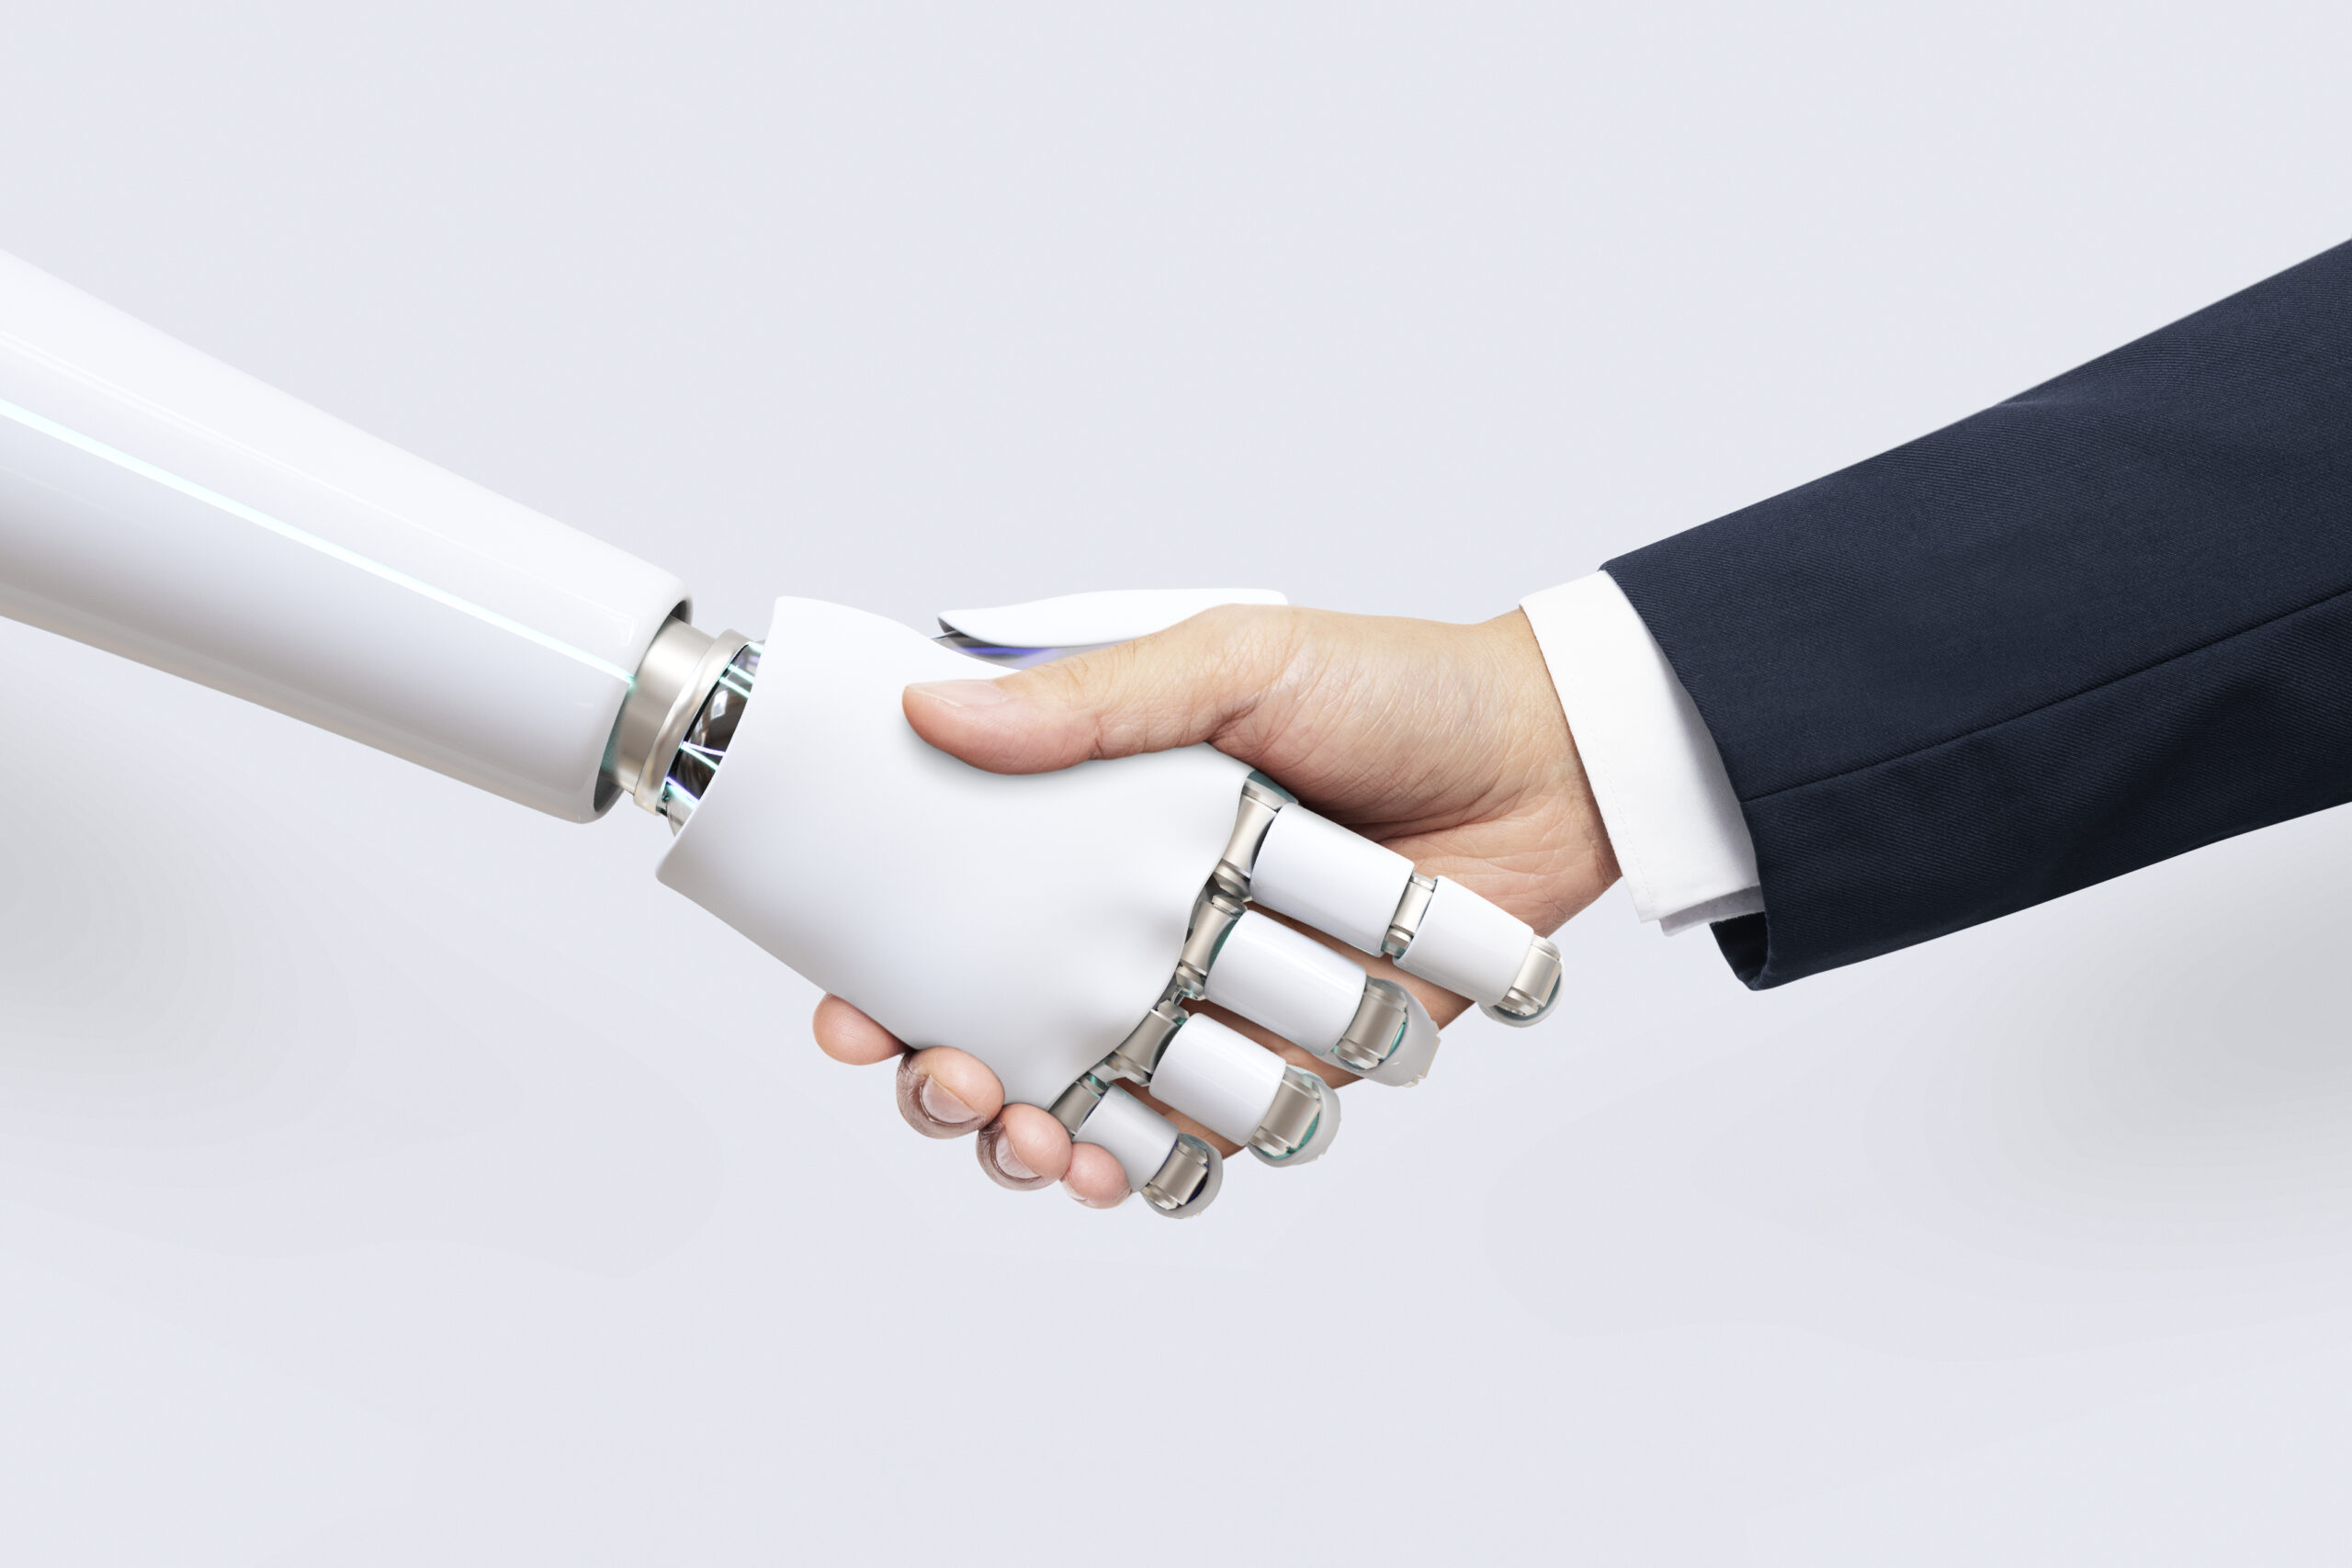 Робот жмёт руку человеку